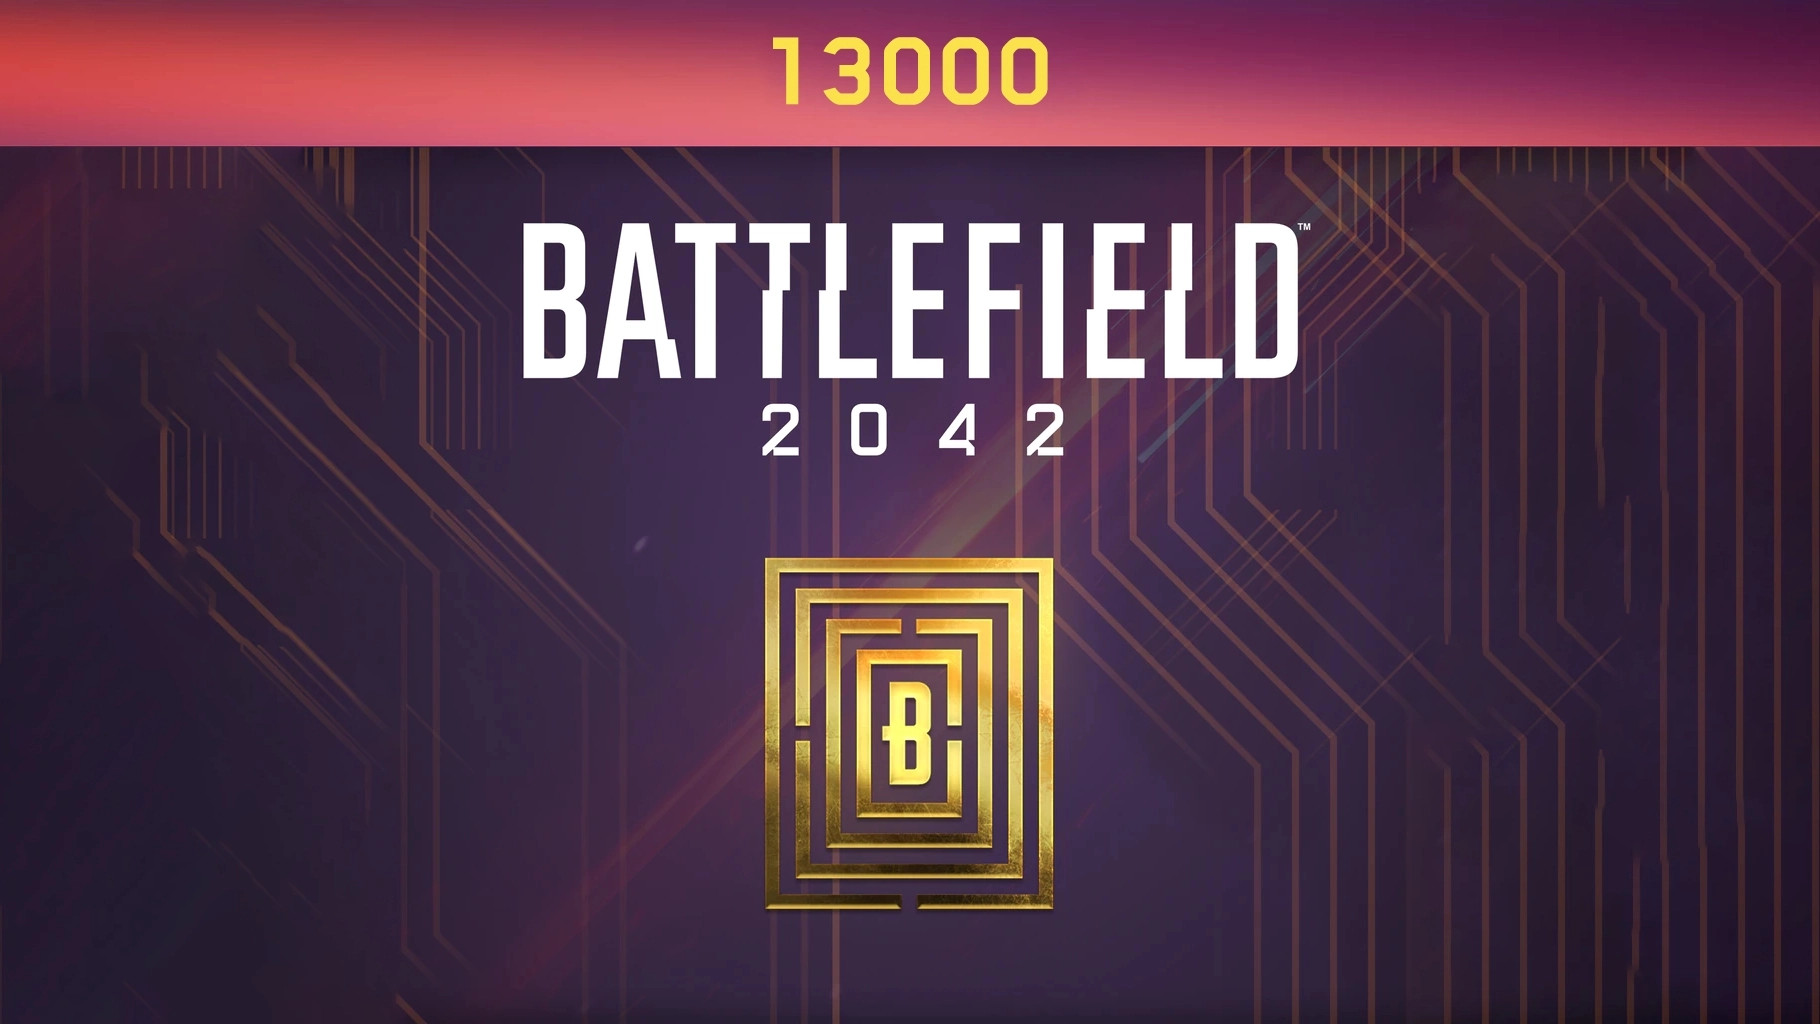 Battlefield 2042 - 13000 BFC Balance XBOX One / Xbox Series X|S CD Key 96.6 usd